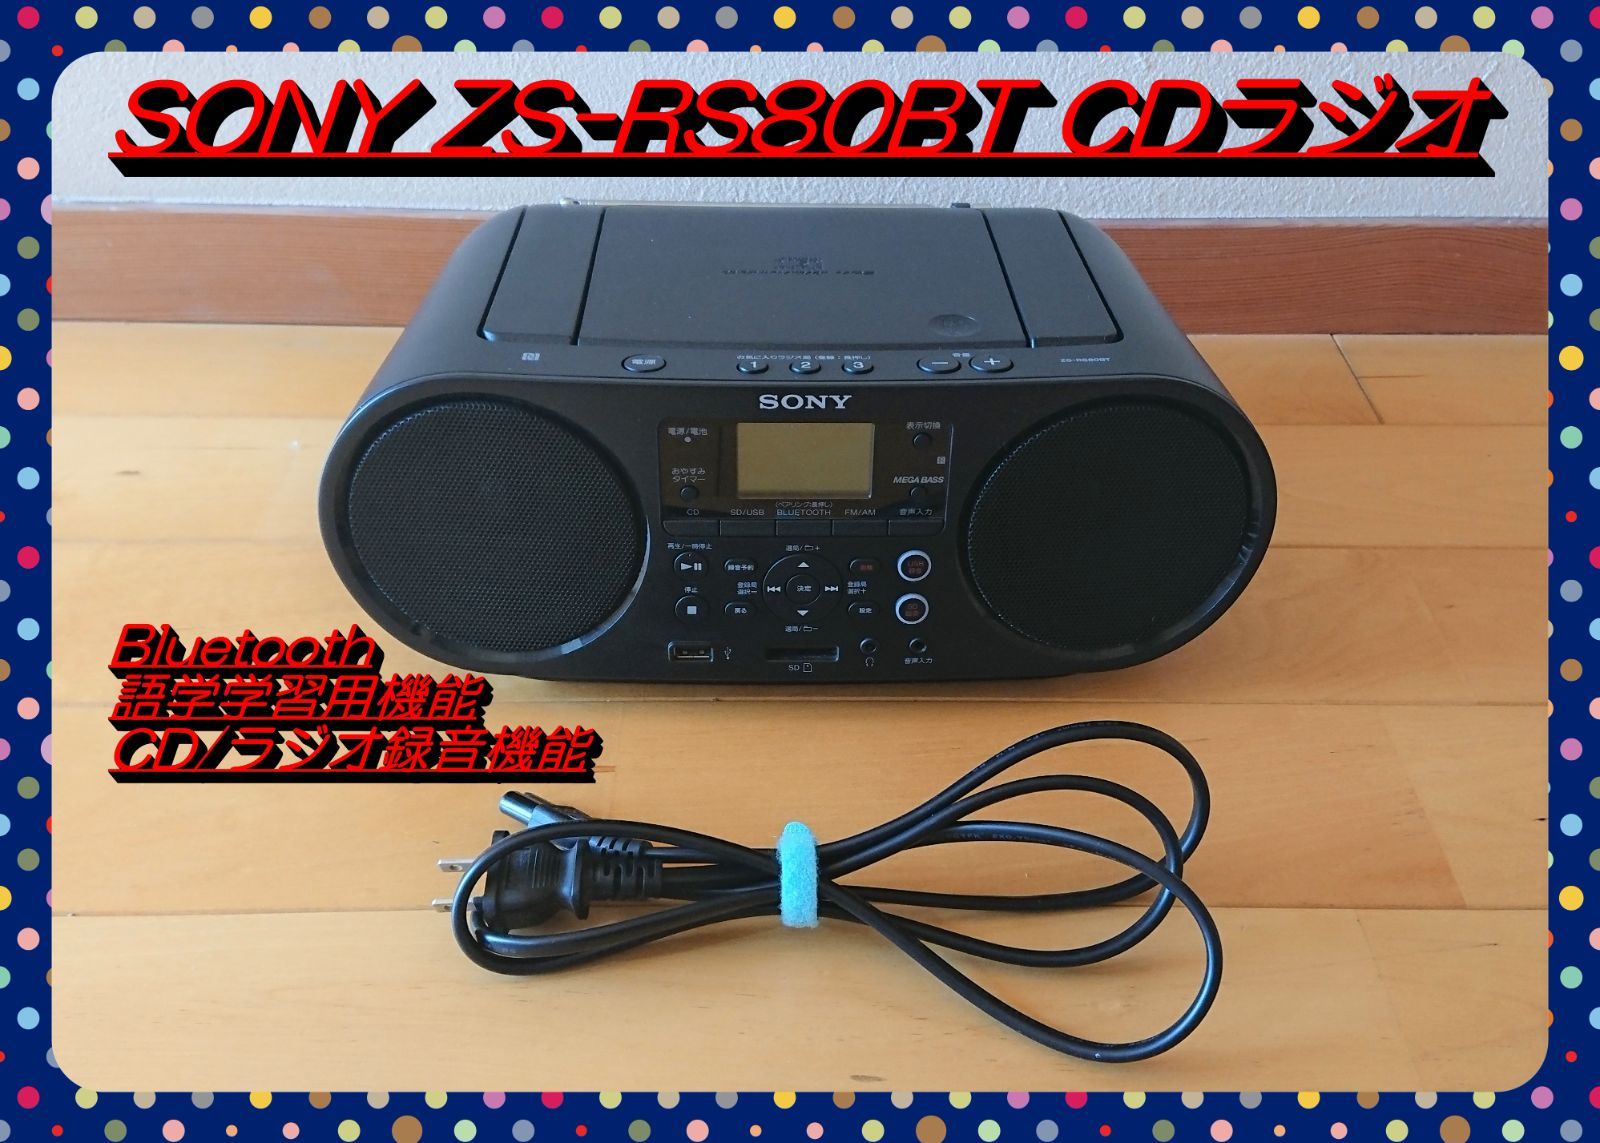 ソニー CDラジオ FM/AM/ワイドFM/Bluetooth対応 語学学習用機能/オートスタンバイ機能搭載 ZS-RS80BT 